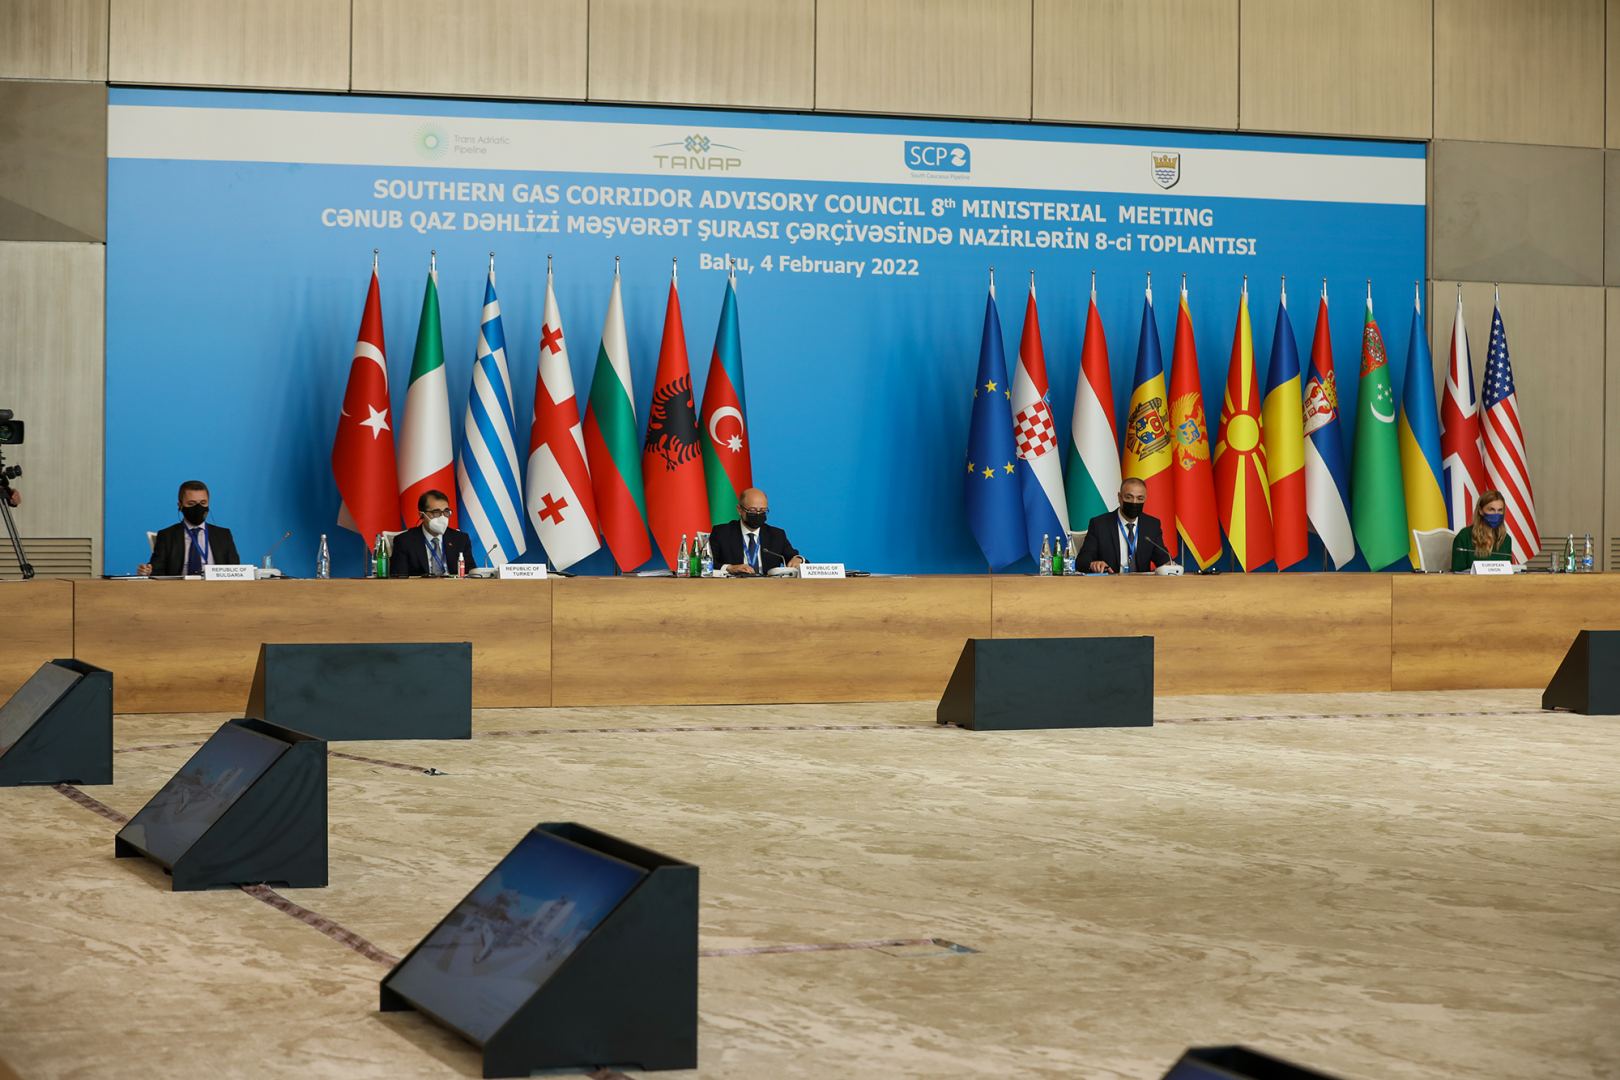 Азербайджан готов сотрудничать со странами, желающими приобрести дополнительные объемы газа – министр